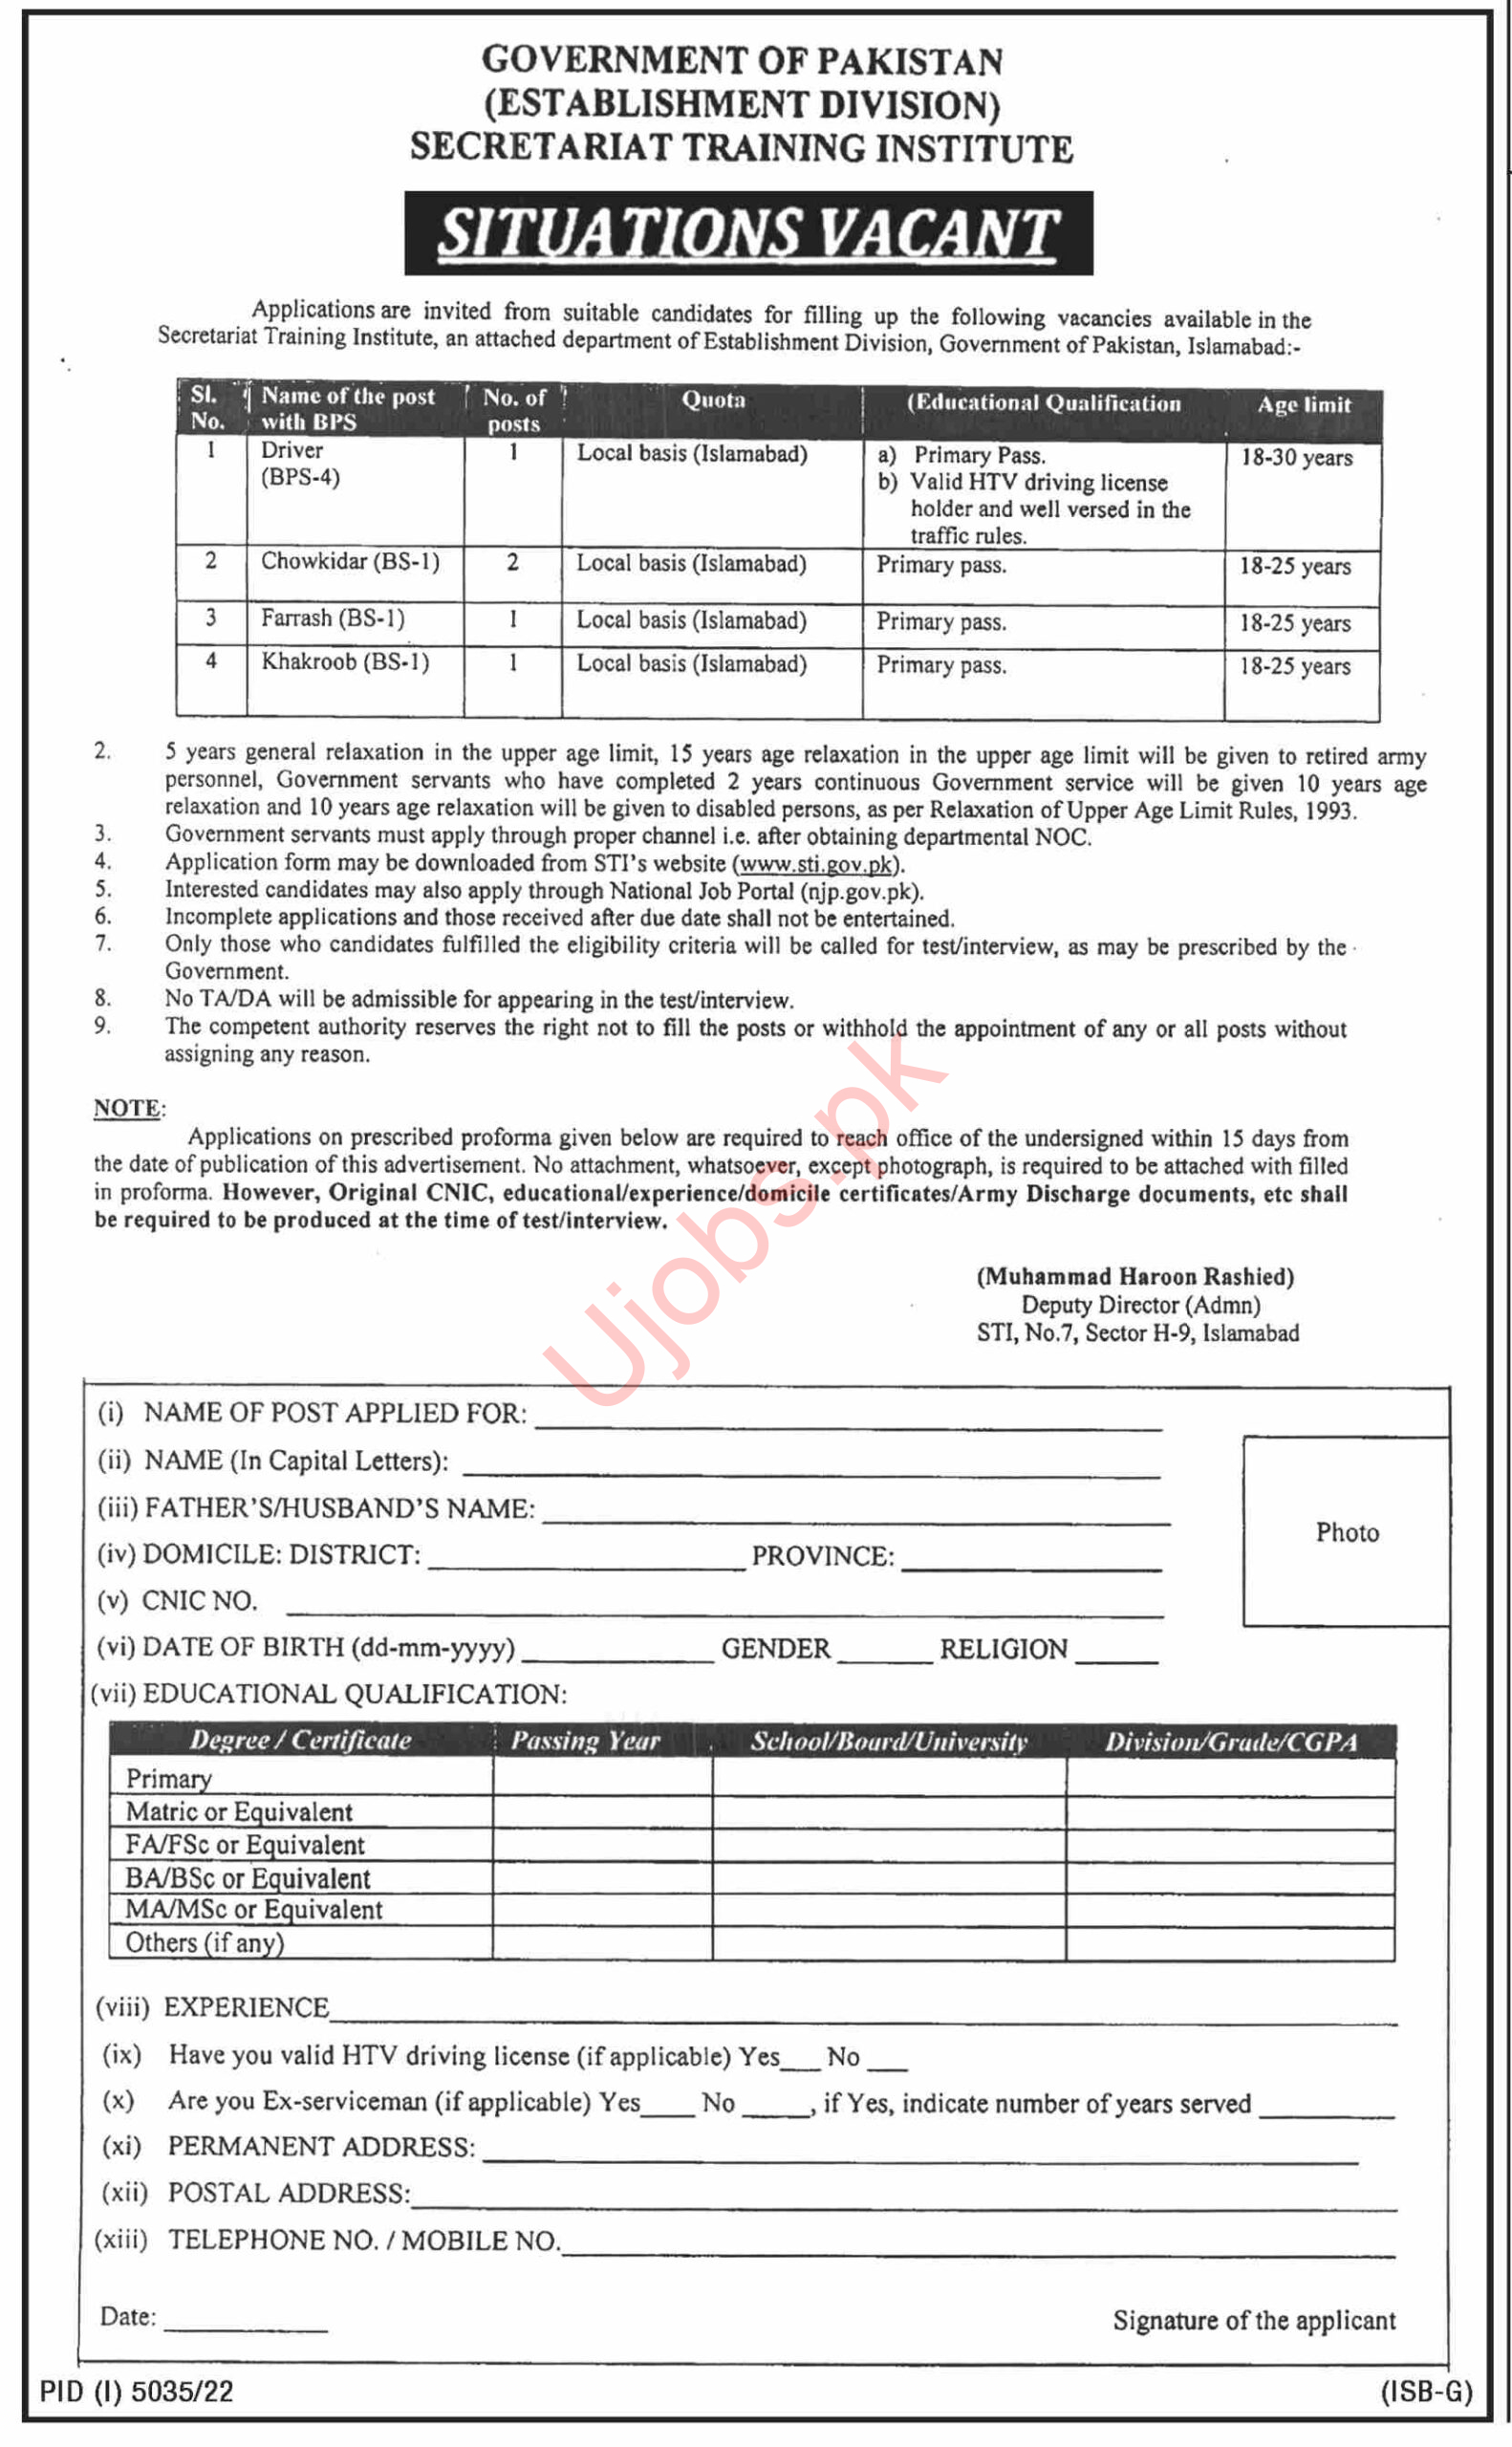 Secretariat Training Institute Jobs February 2023 - Govt Of Pakistan